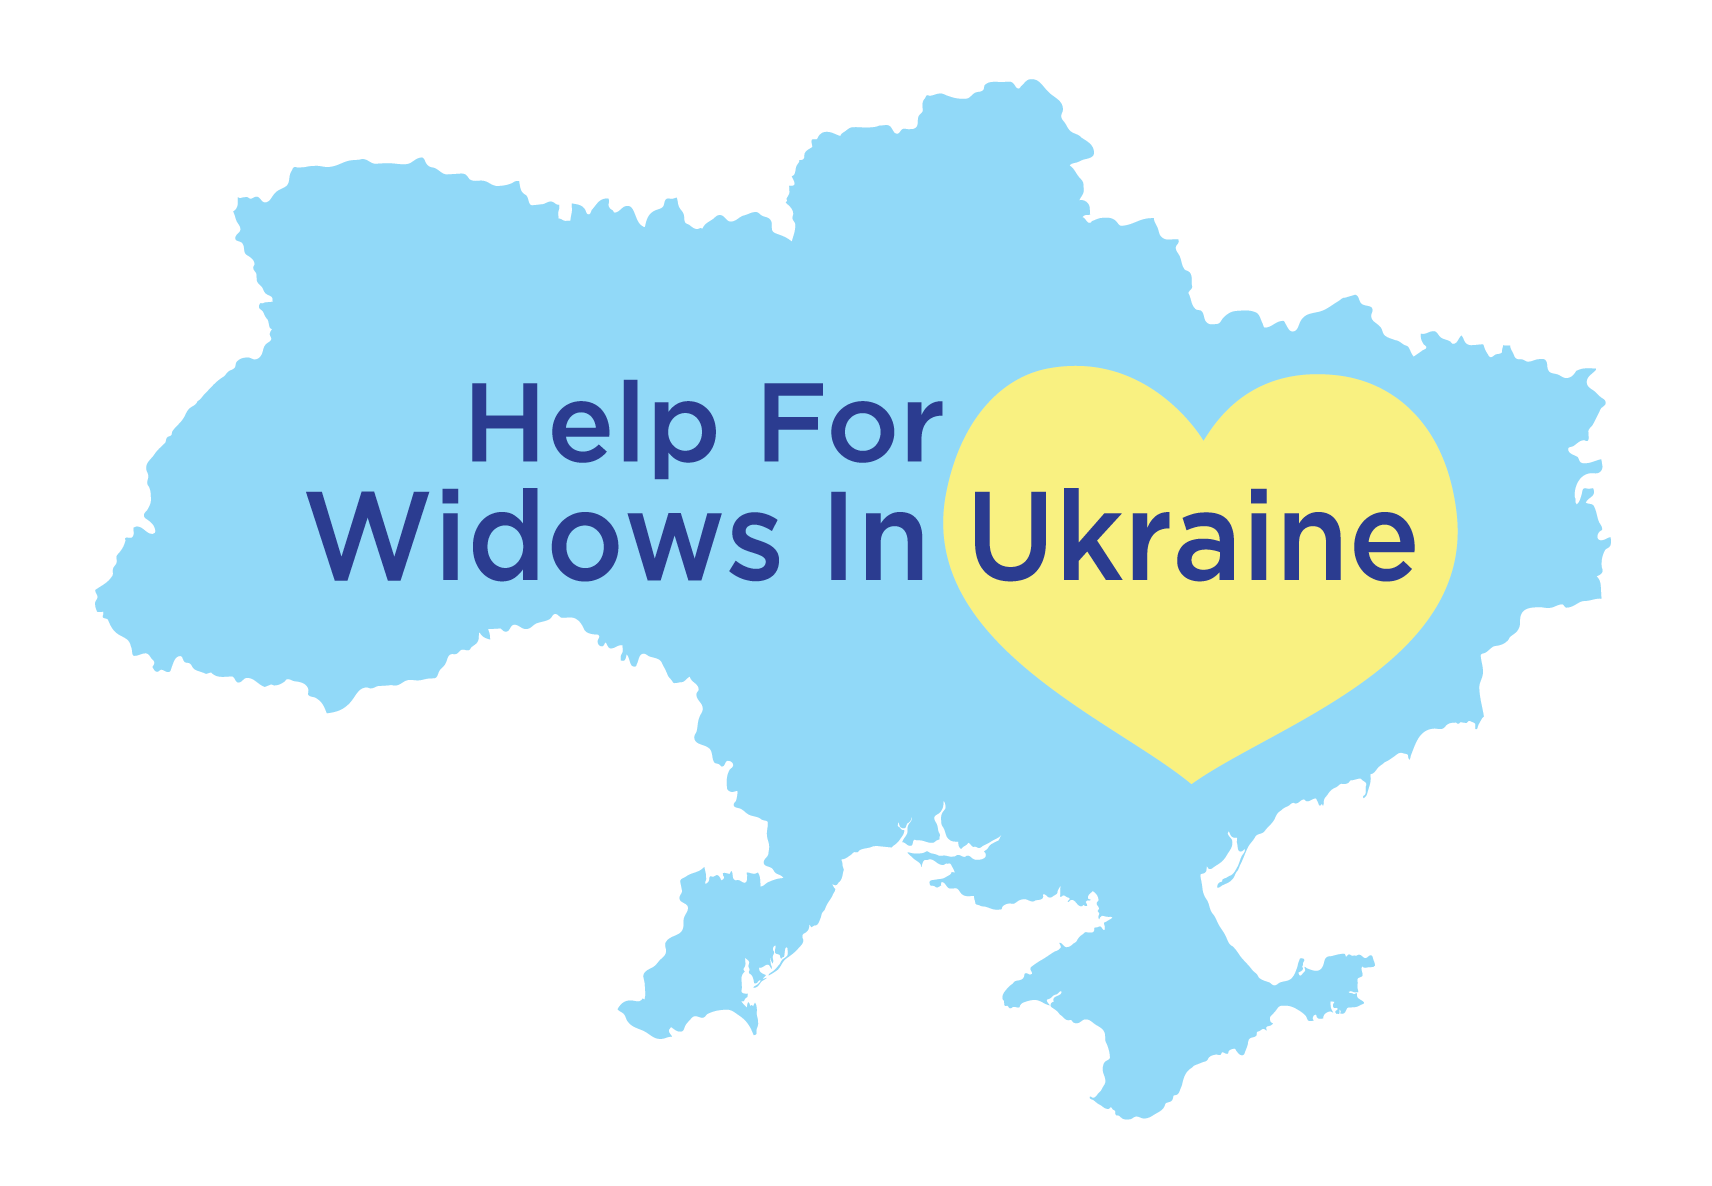 Help for Widows in Ukraine Logo